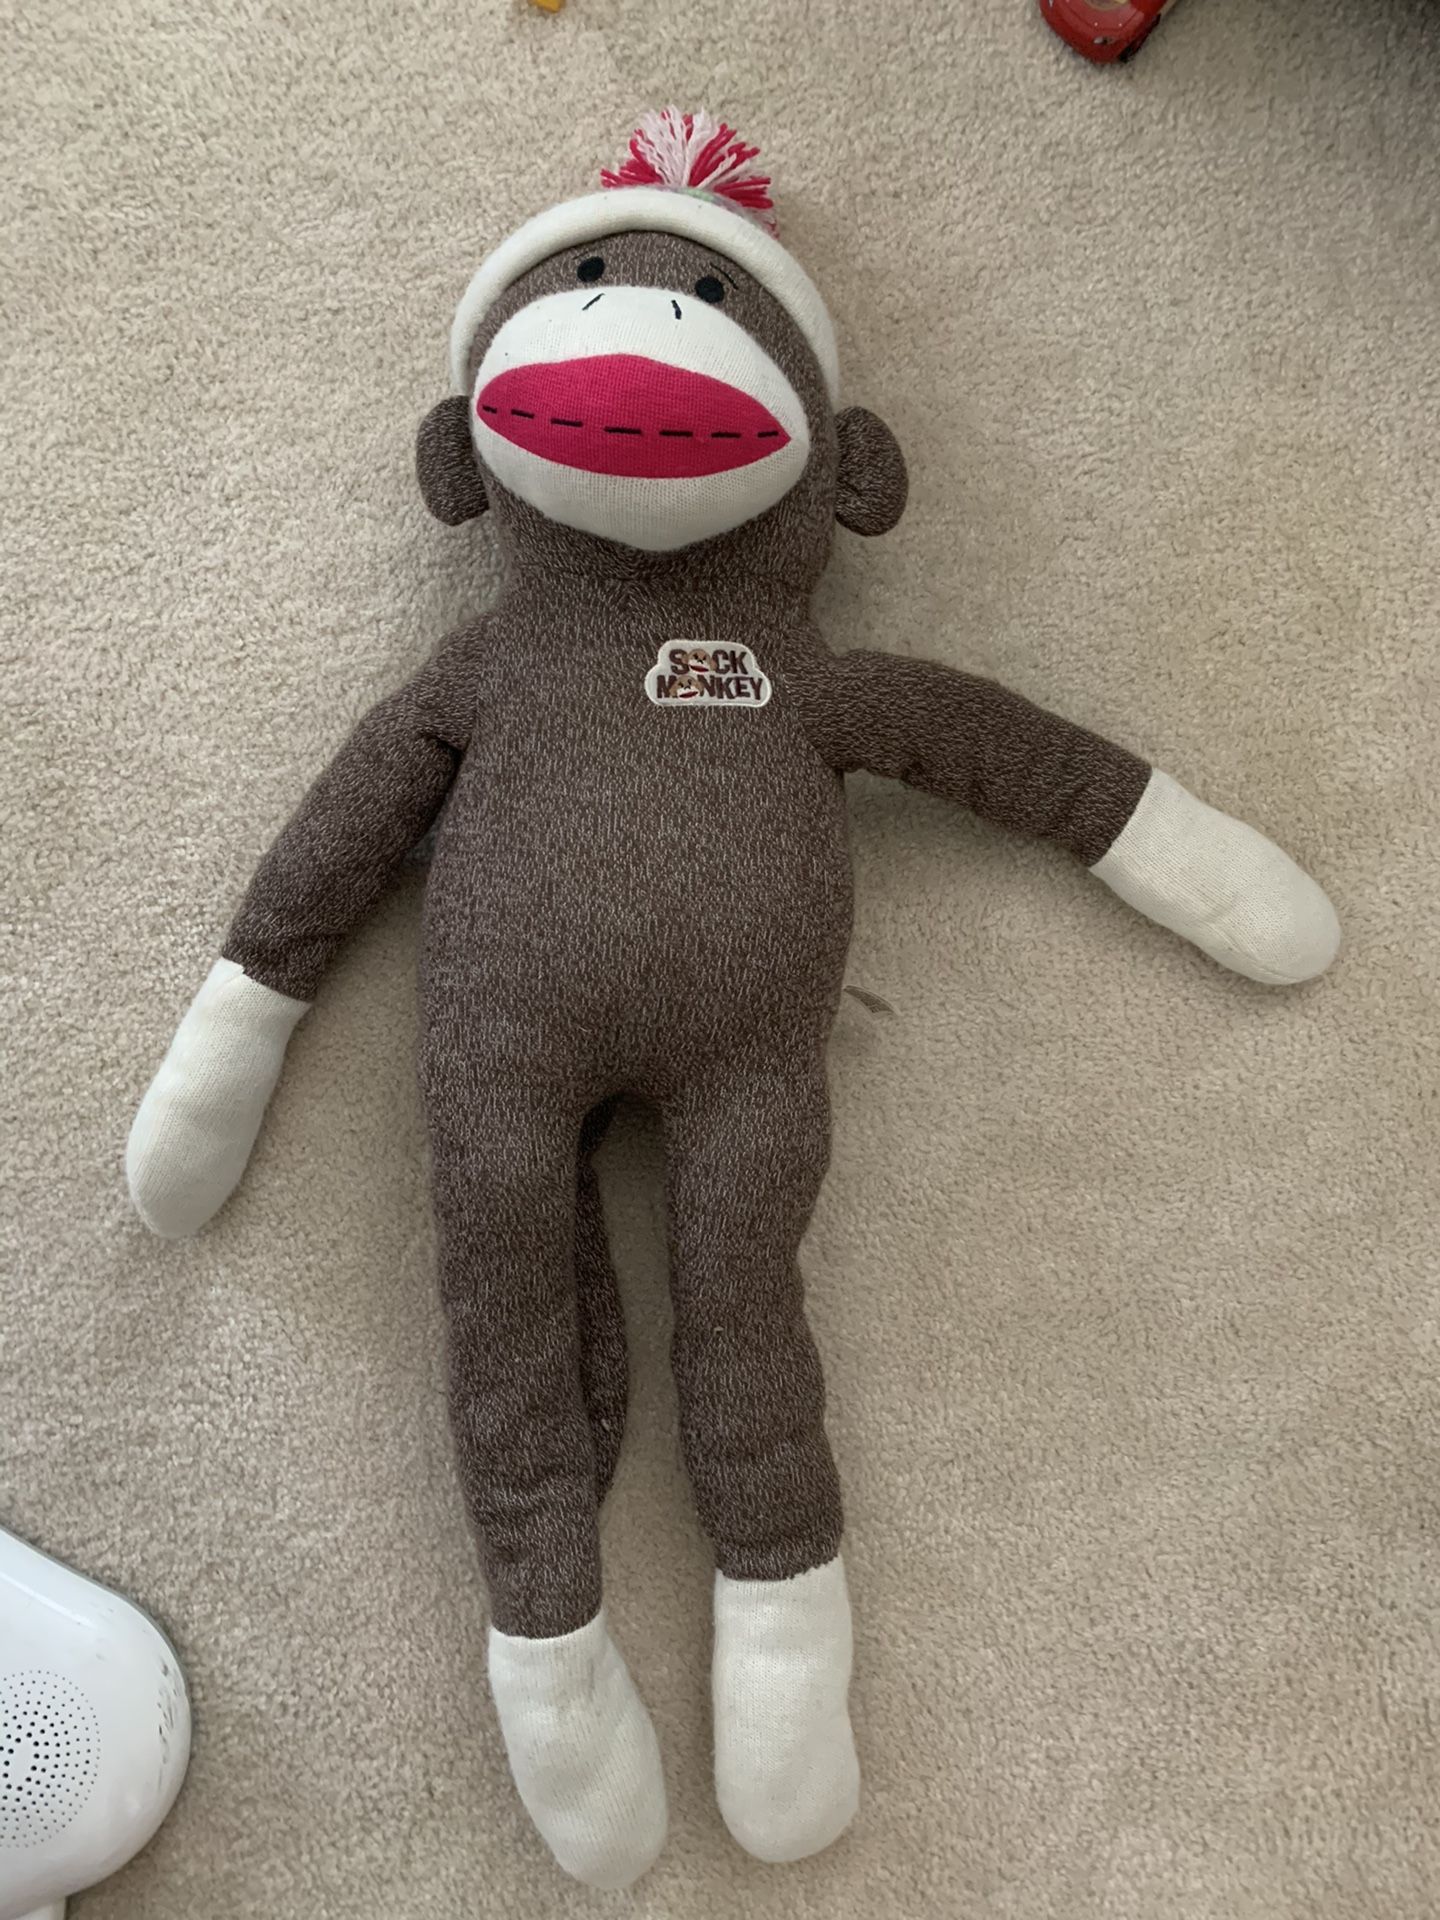 Giant sock monkey stuffed animal